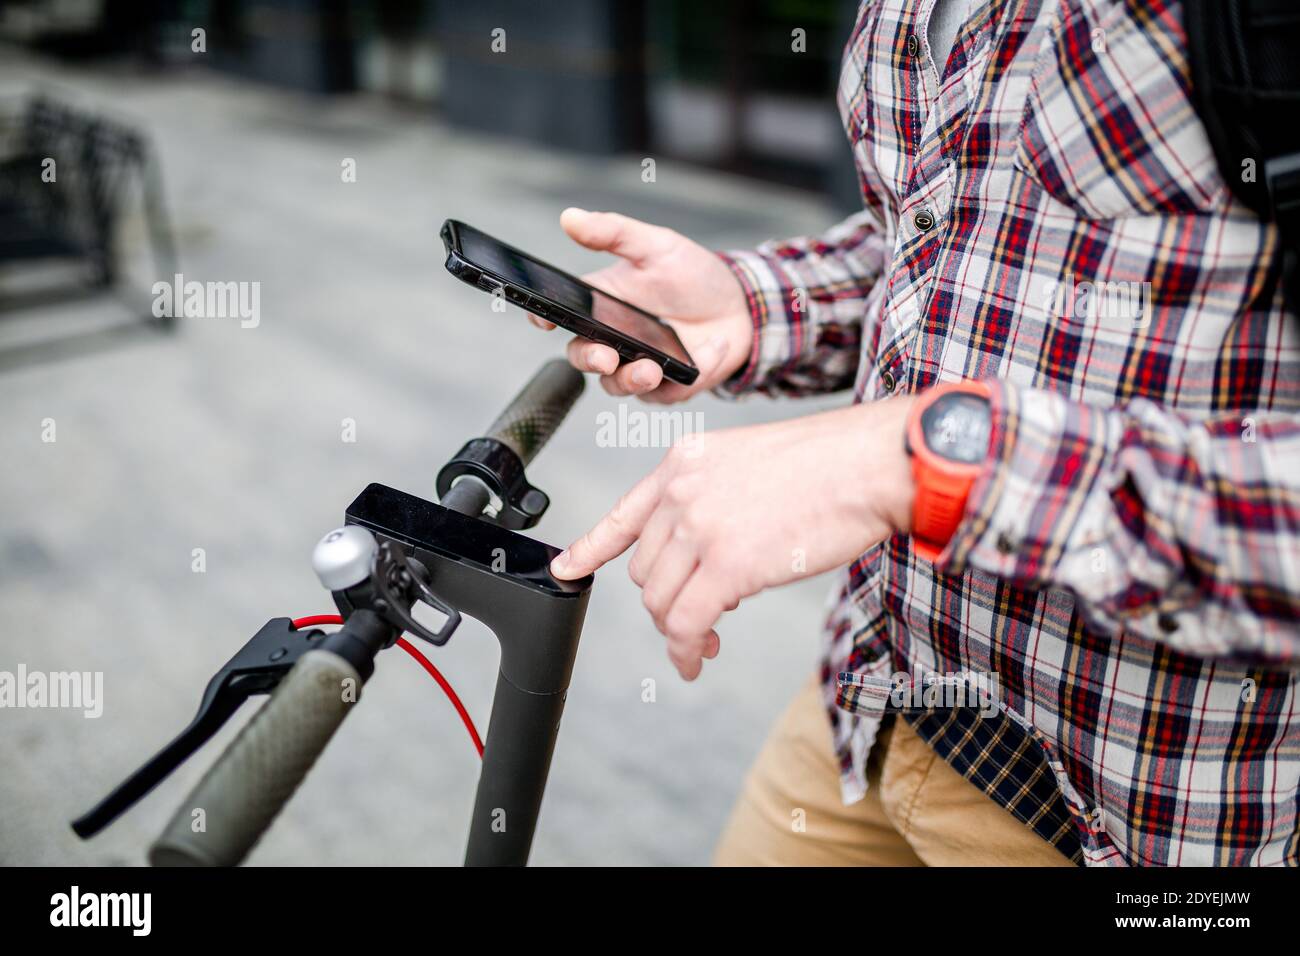 Hände männlich hält Smartphone entsperren Elektroroller Verleih, close-up. Moderne umweltfreundliche alternative Verkehrsmittel in der Stadt, persönliche Mobilität in Stockfoto